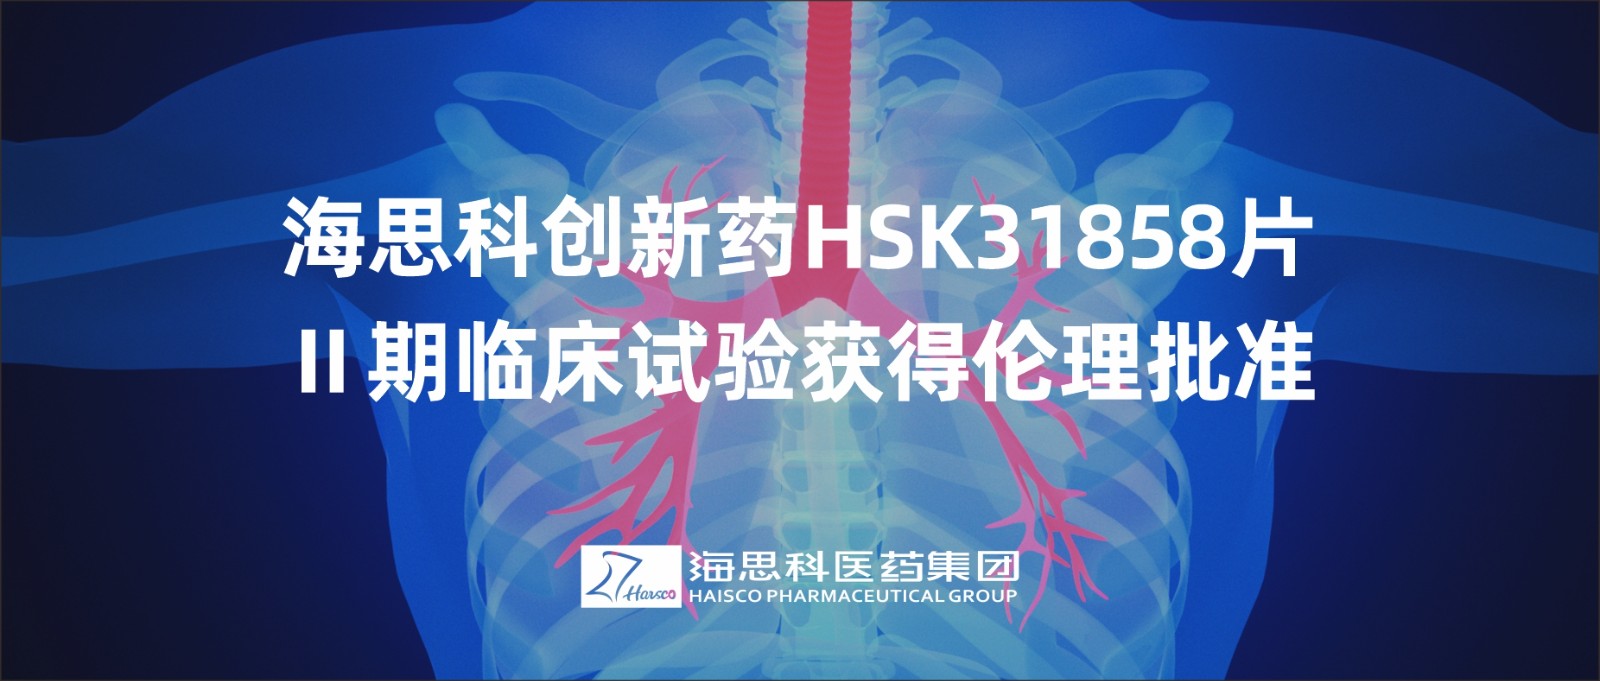 永利总站创新药HSK31858片Ⅱ期临床试验获得伦理批准